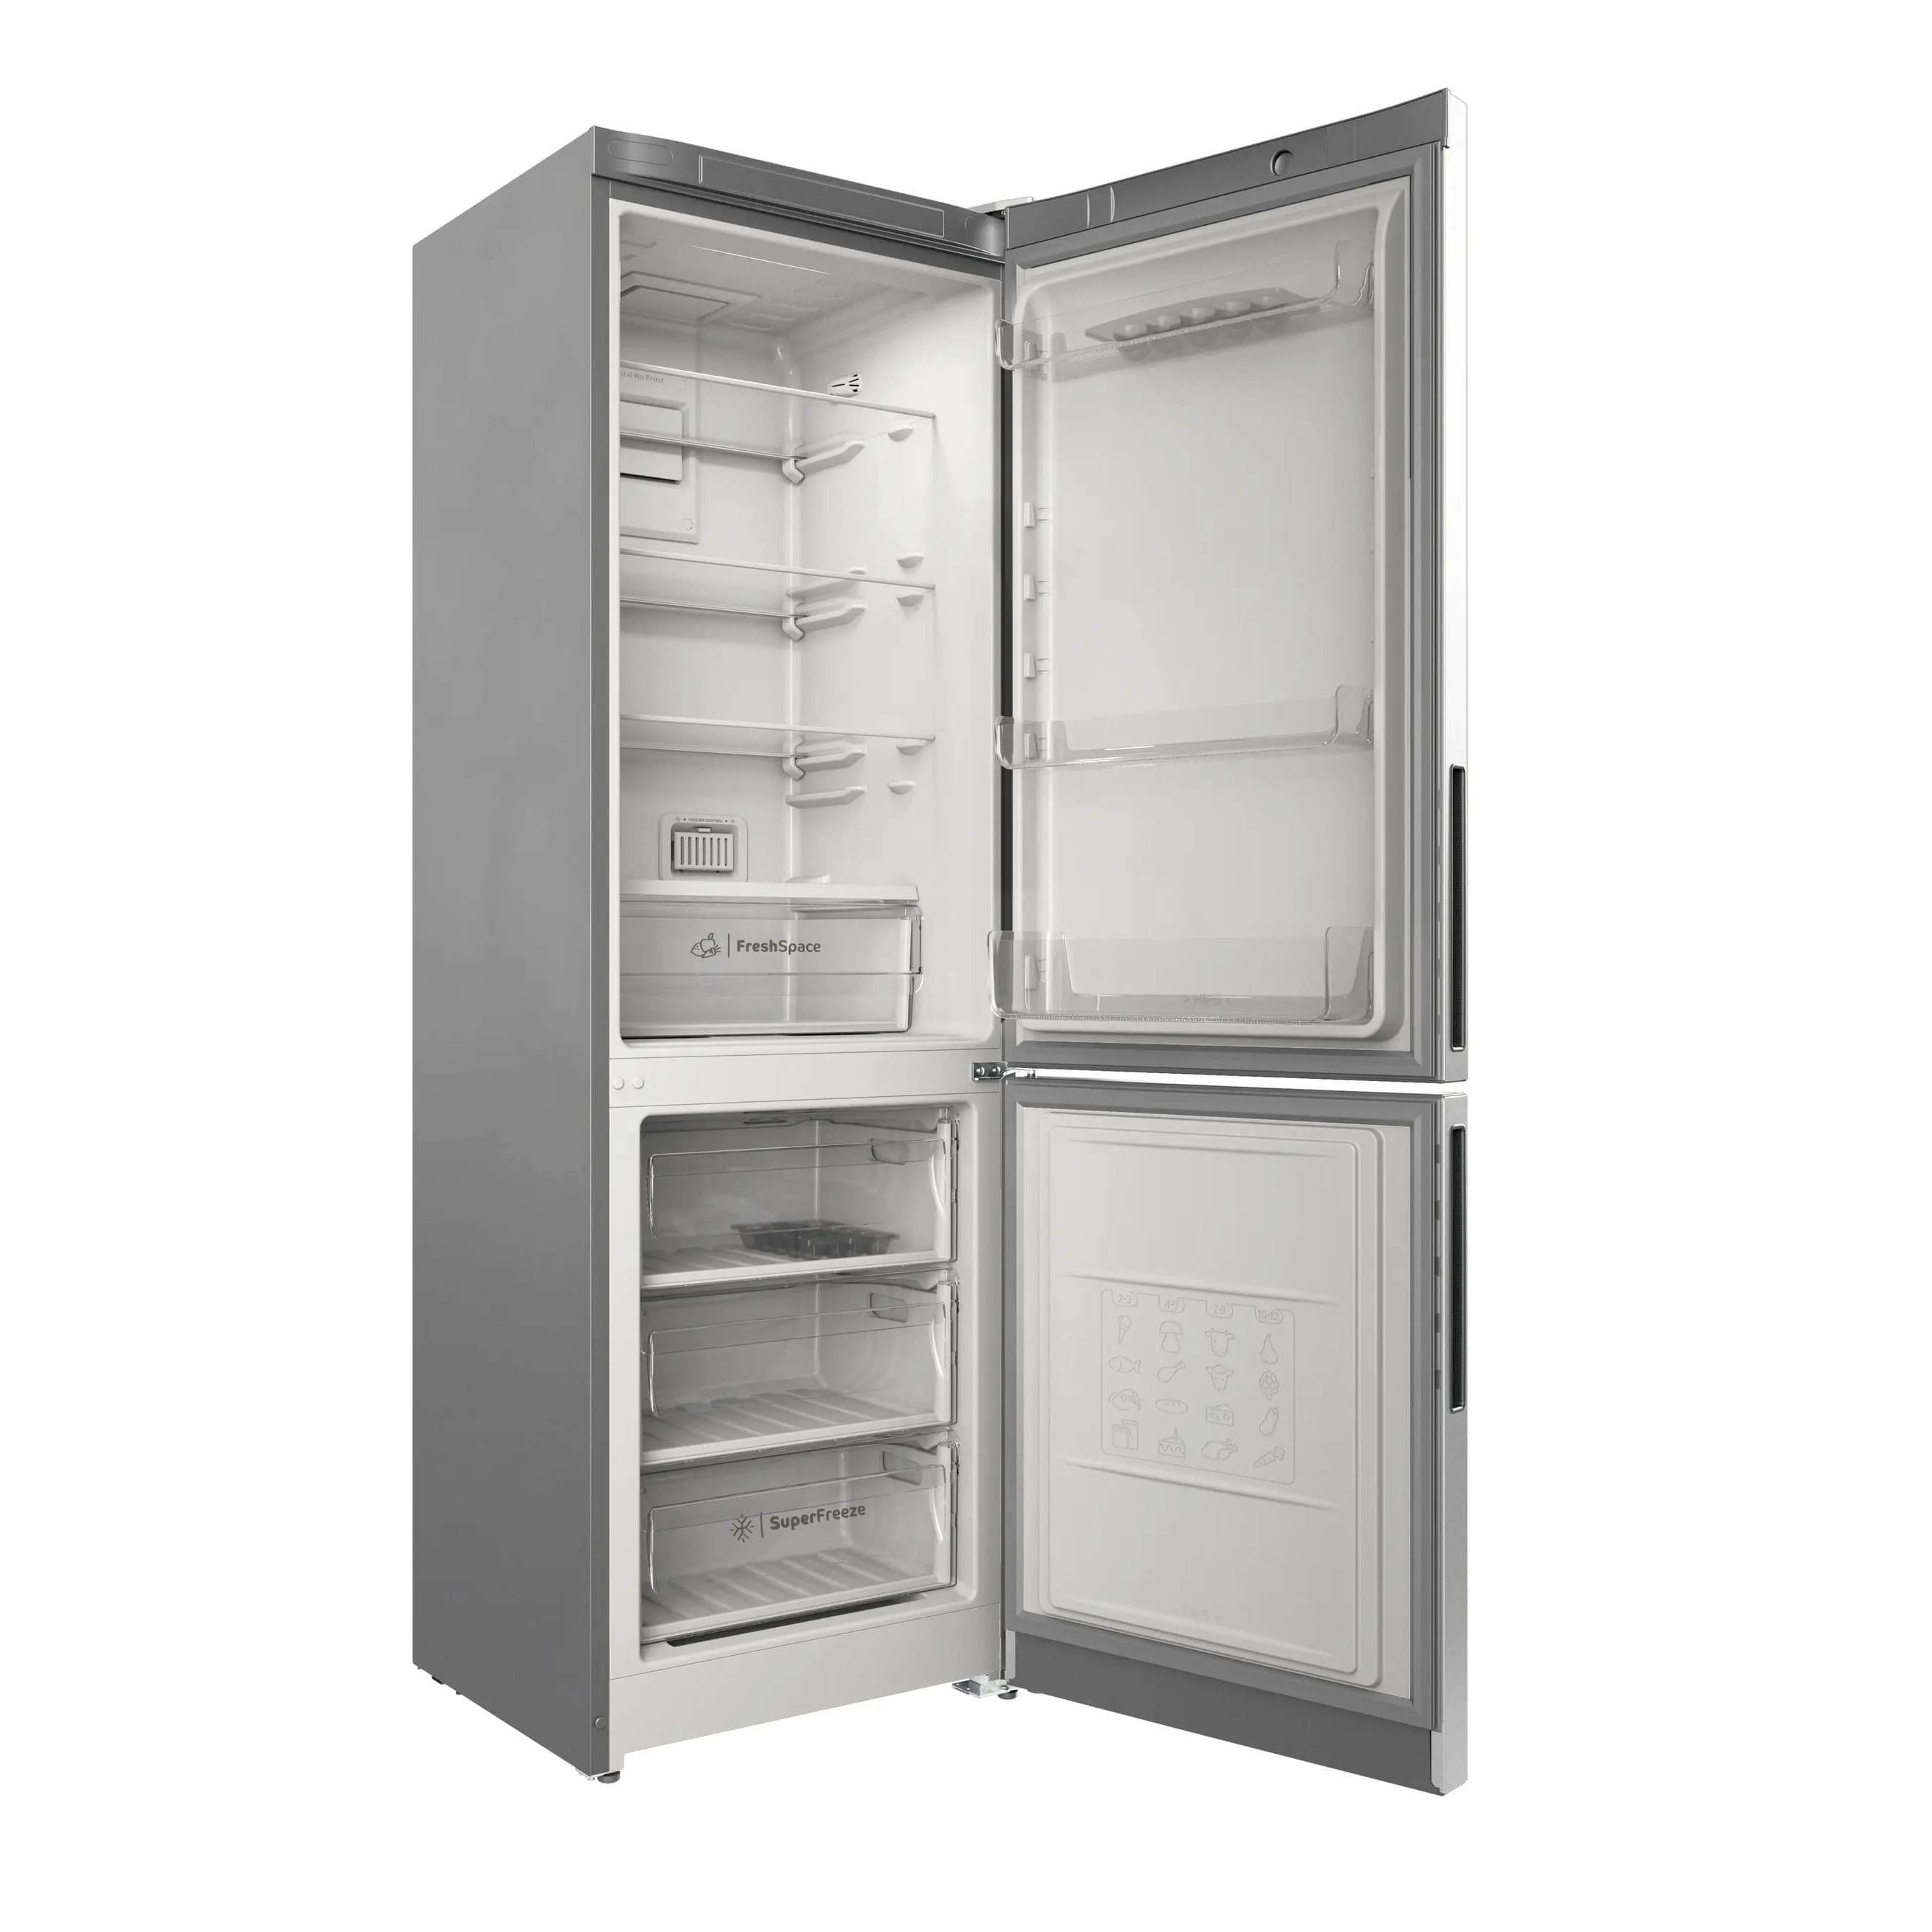 Холодильники индезит отзывы специалистов и покупателей